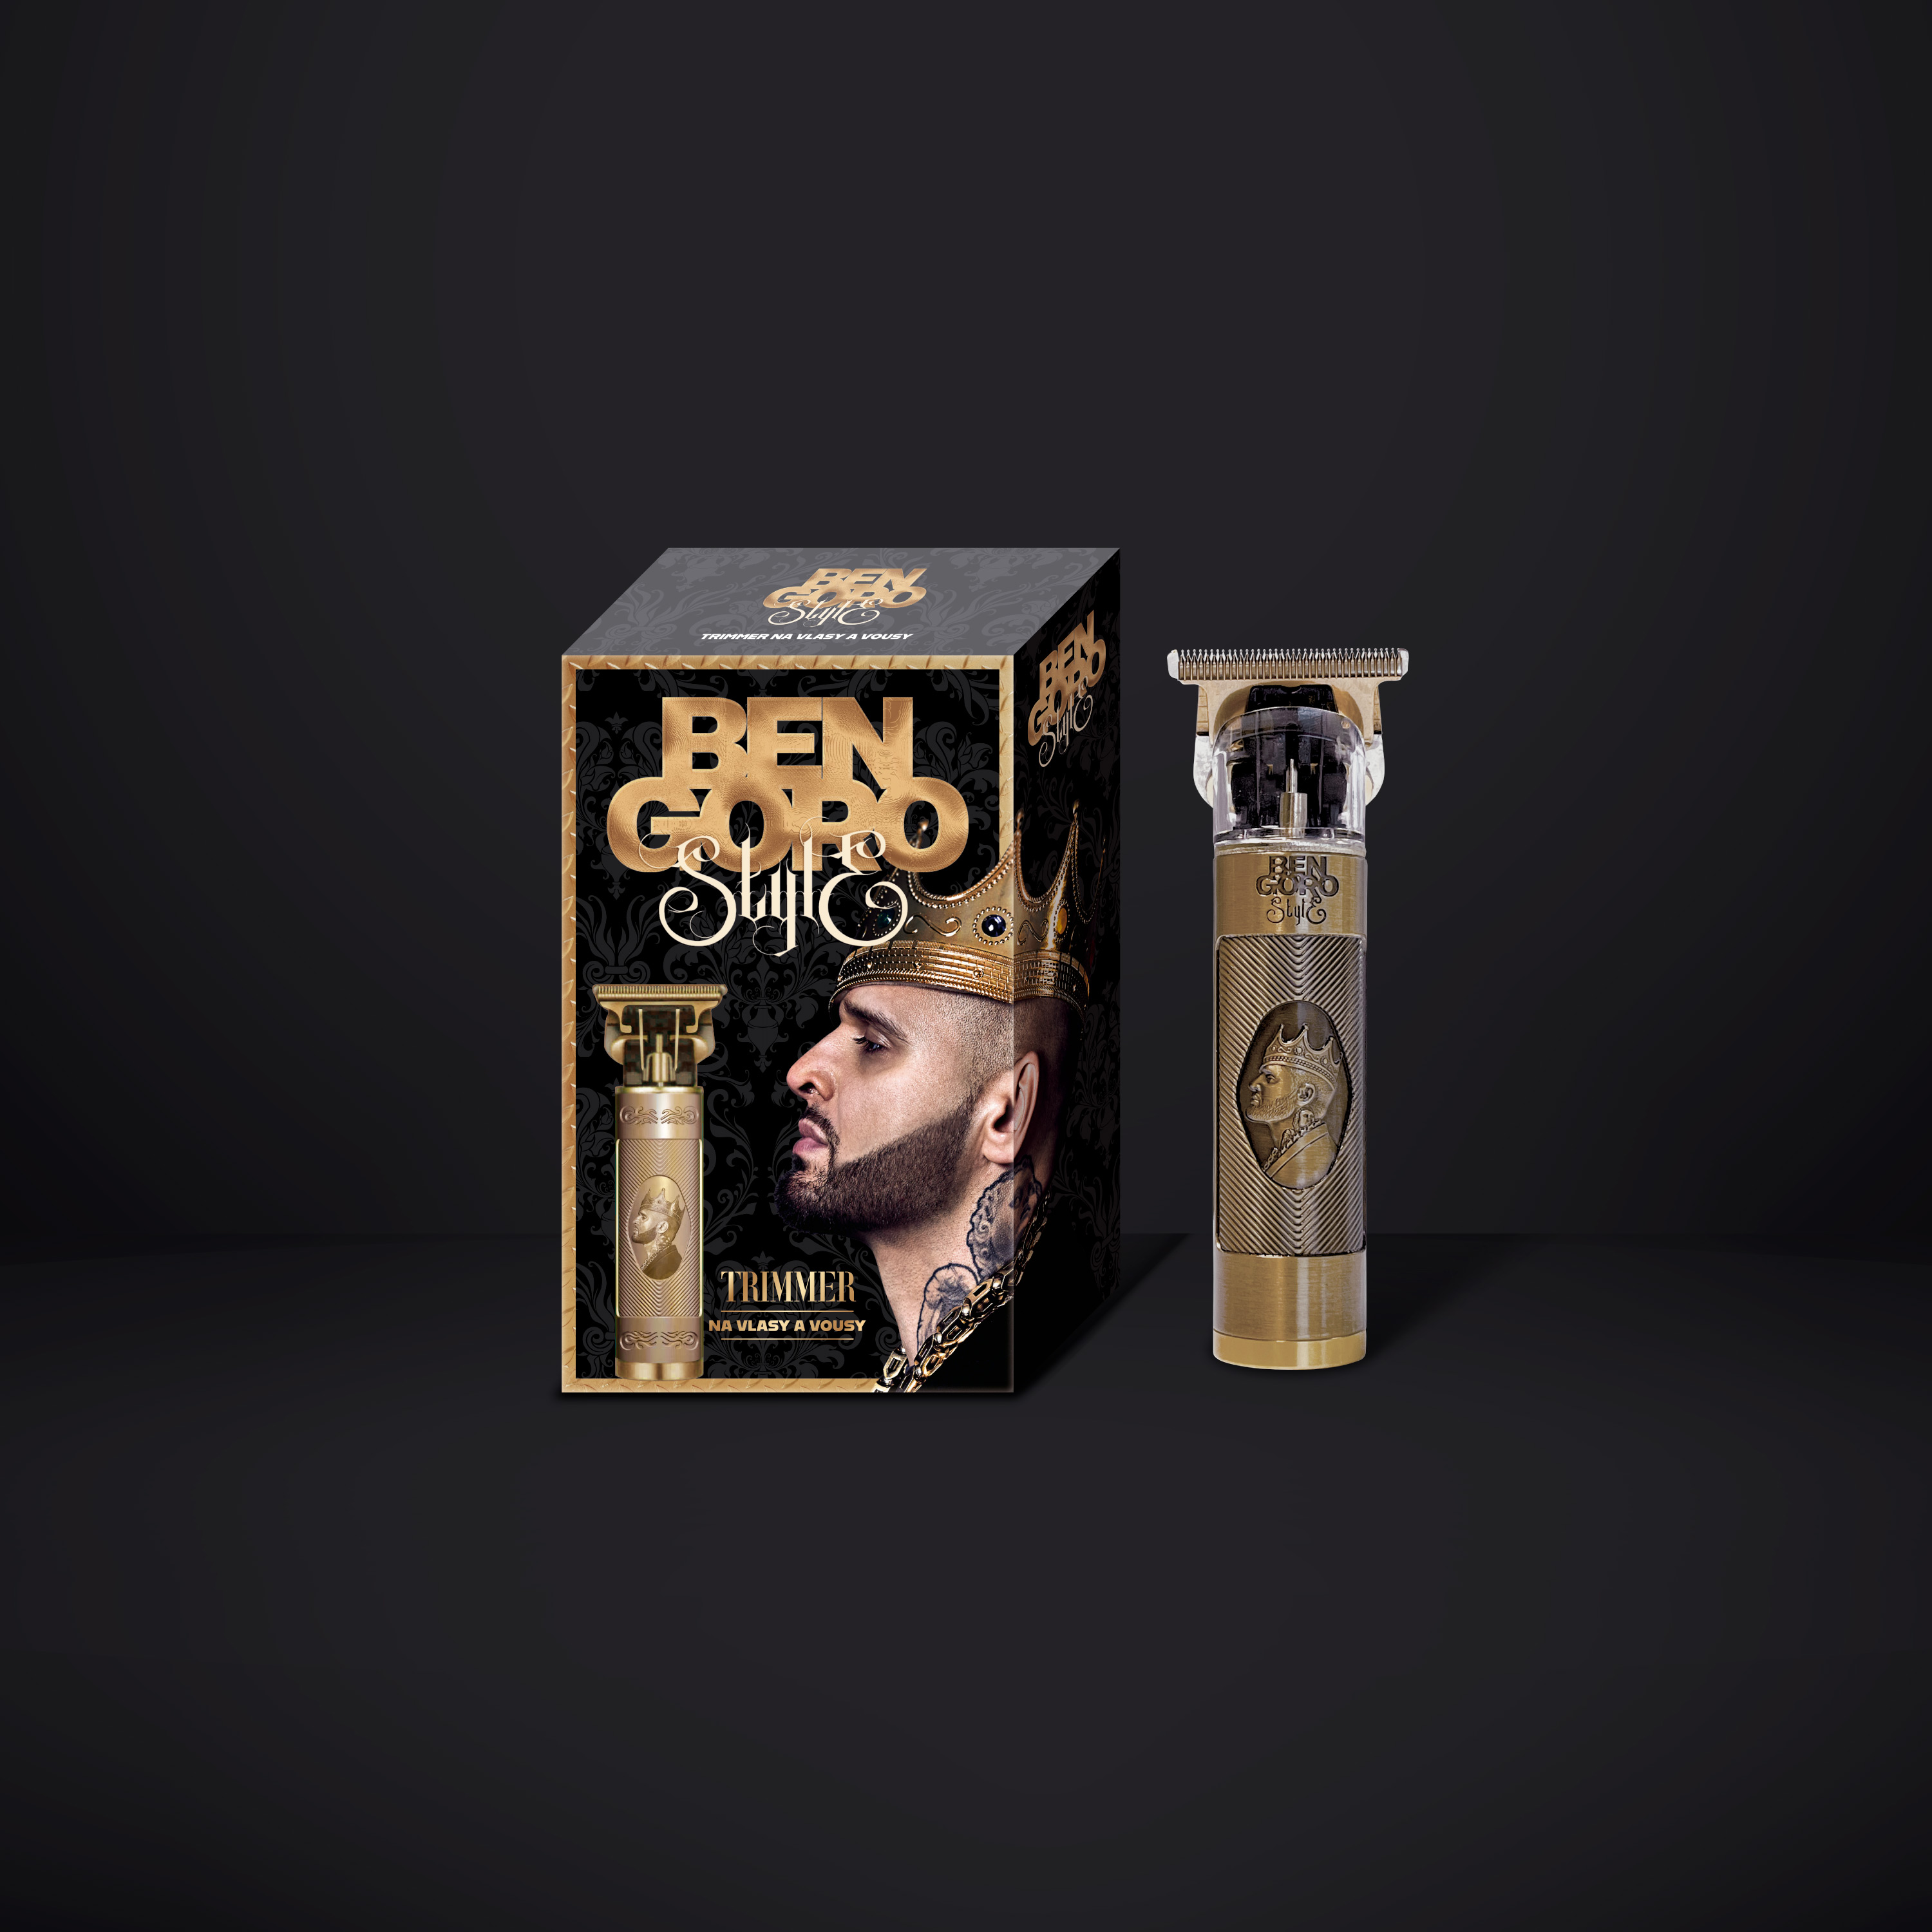 Ben Goro Style - obalový design krabičky zastřihávače vousů